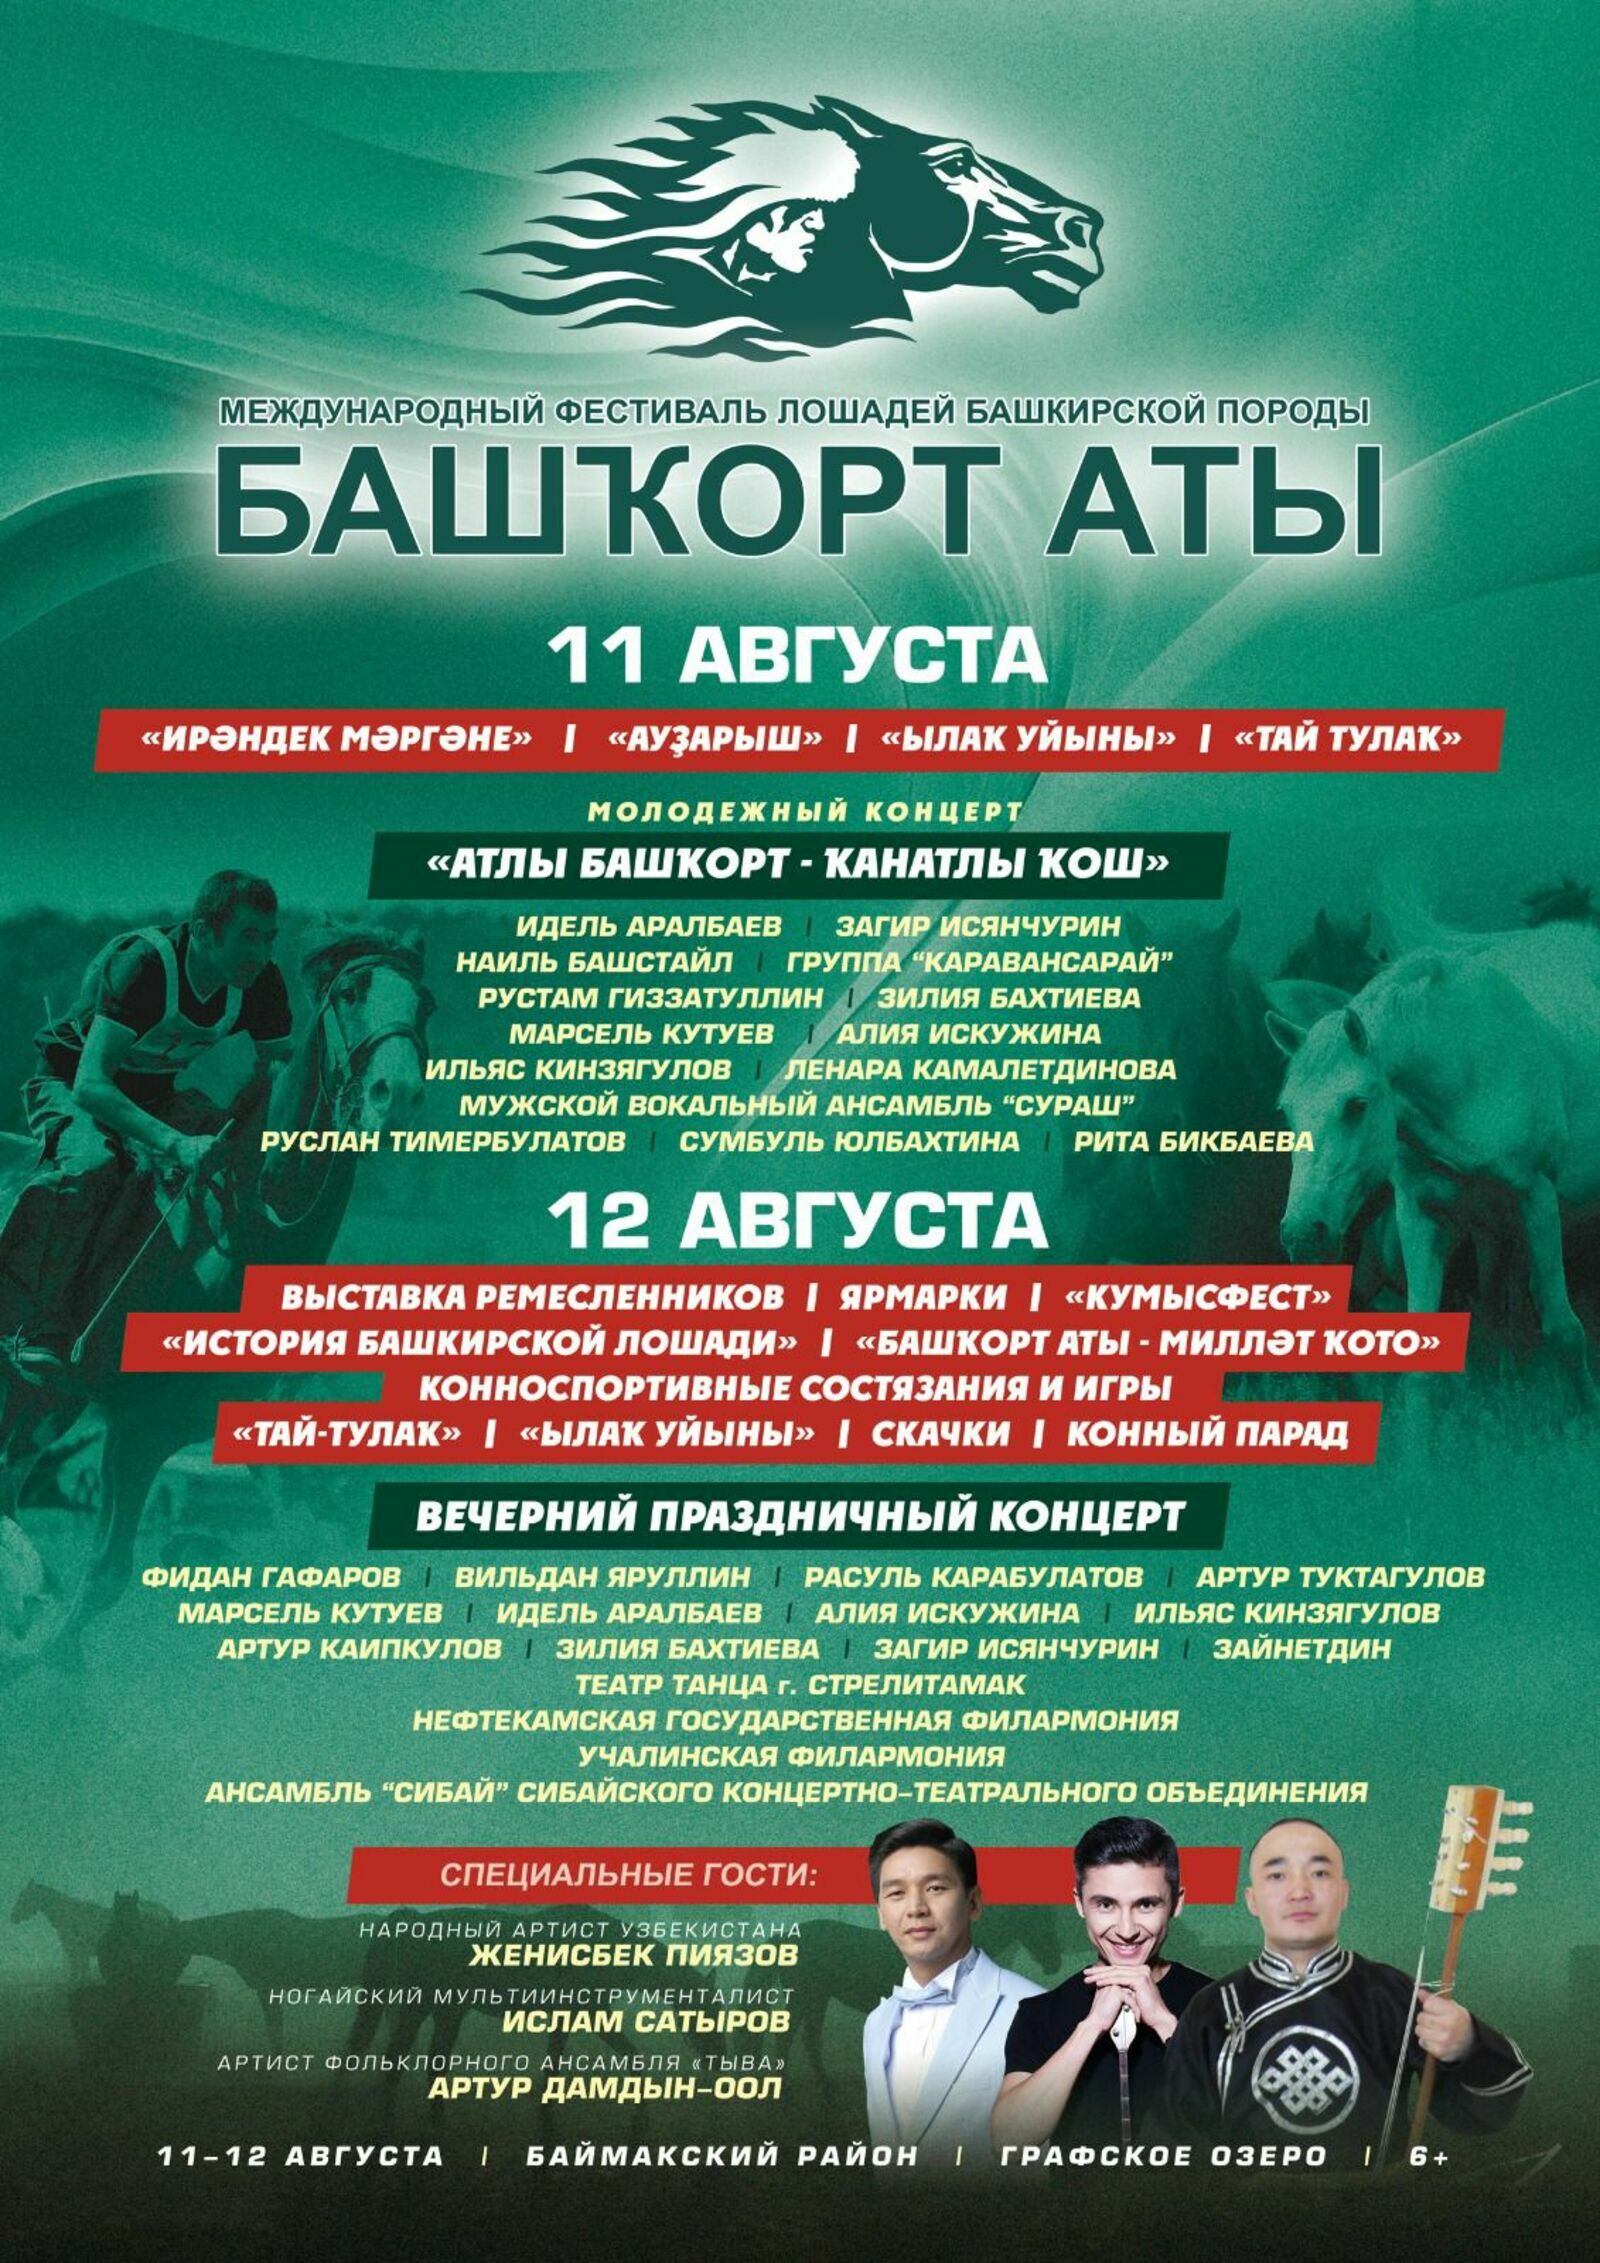 С 11 по 12 августа у озера Графское в Баймакском районе состоится II Международный фестиваль «Башкорт аты»